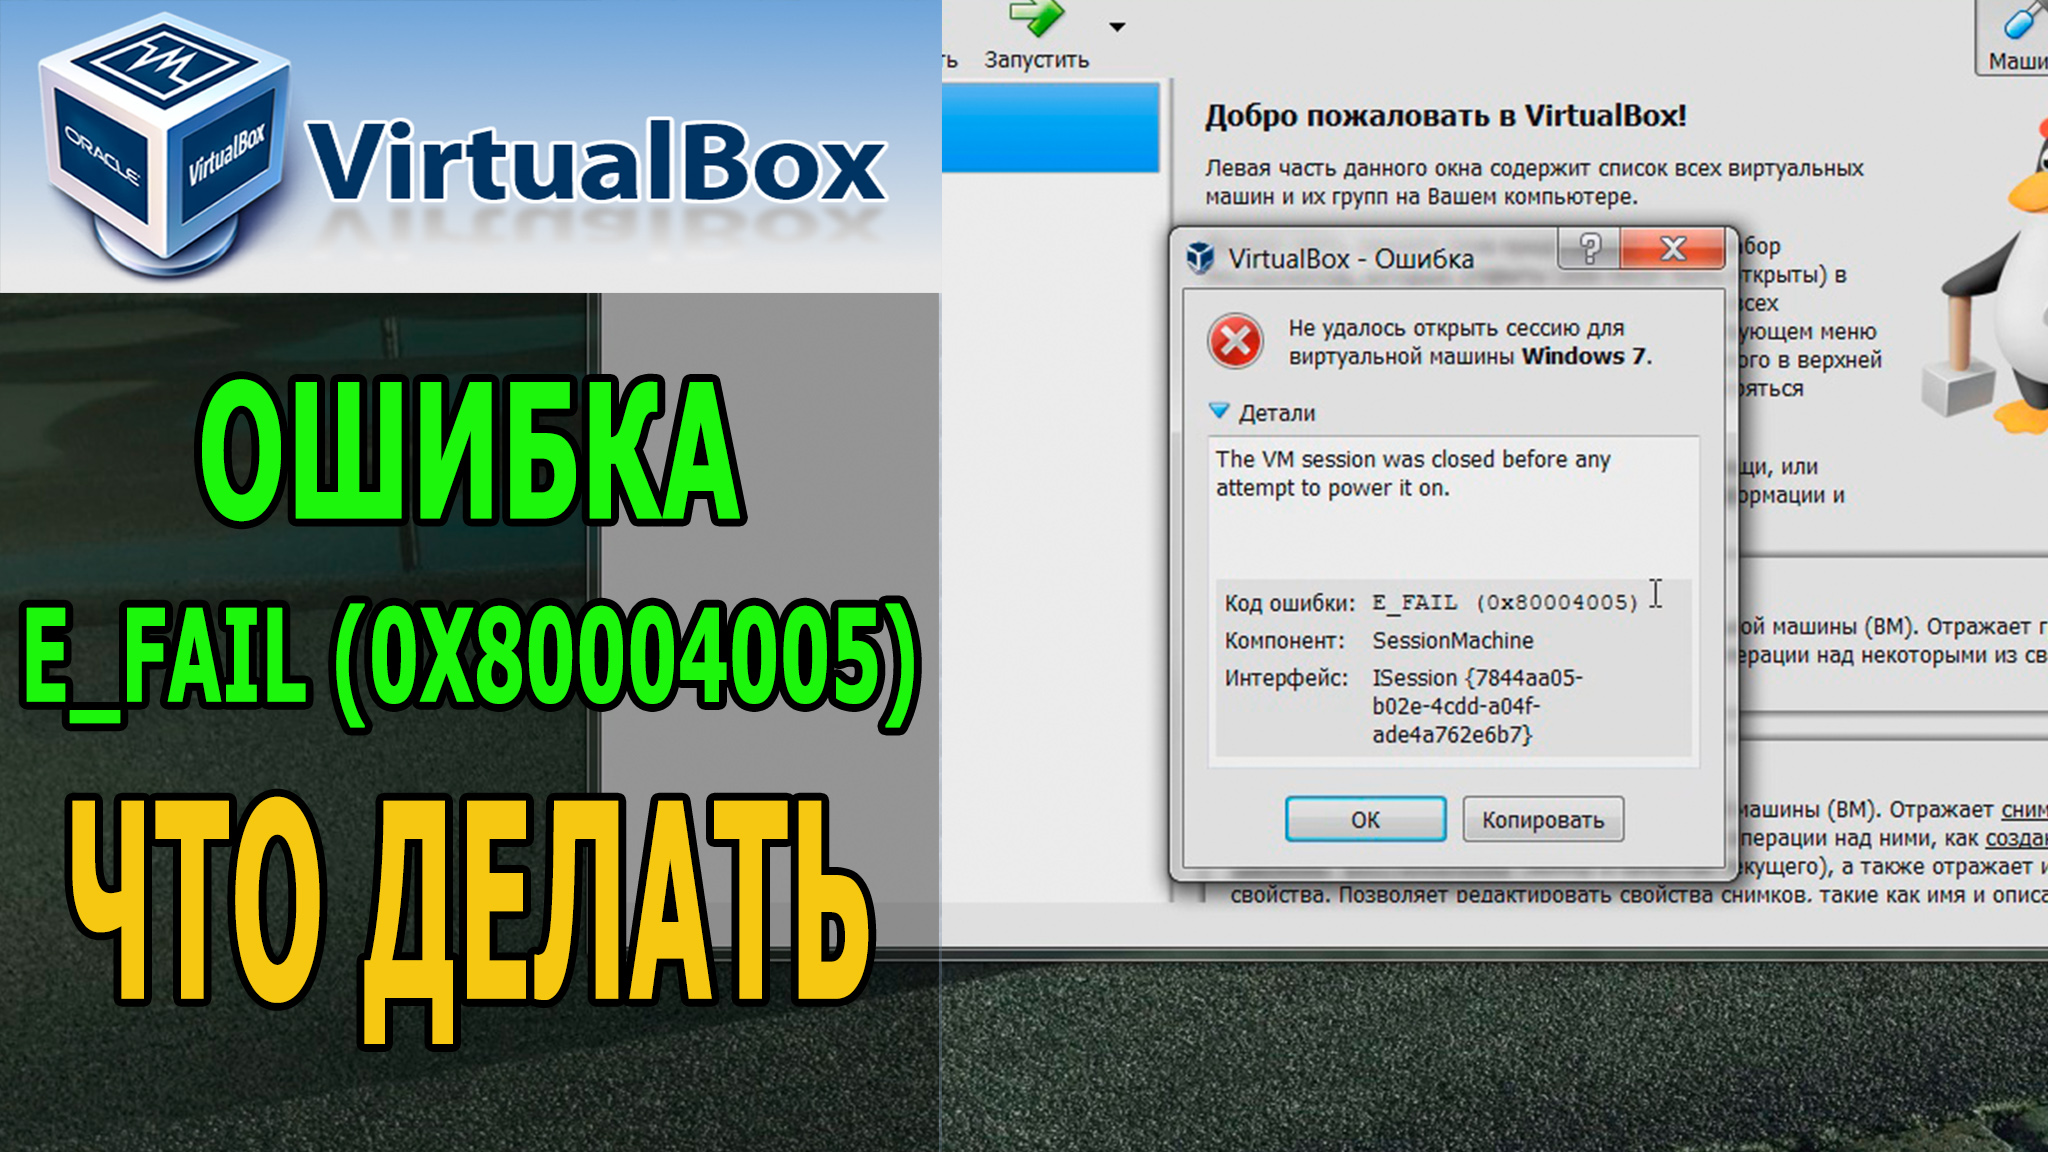 0x80004005 xbox. E fail 0x80004005 VIRTUALBOX Windows 10. E_fail (0x80004005). Код ошибки: VBOX_E_IPRT_Error (0x80bb0005).